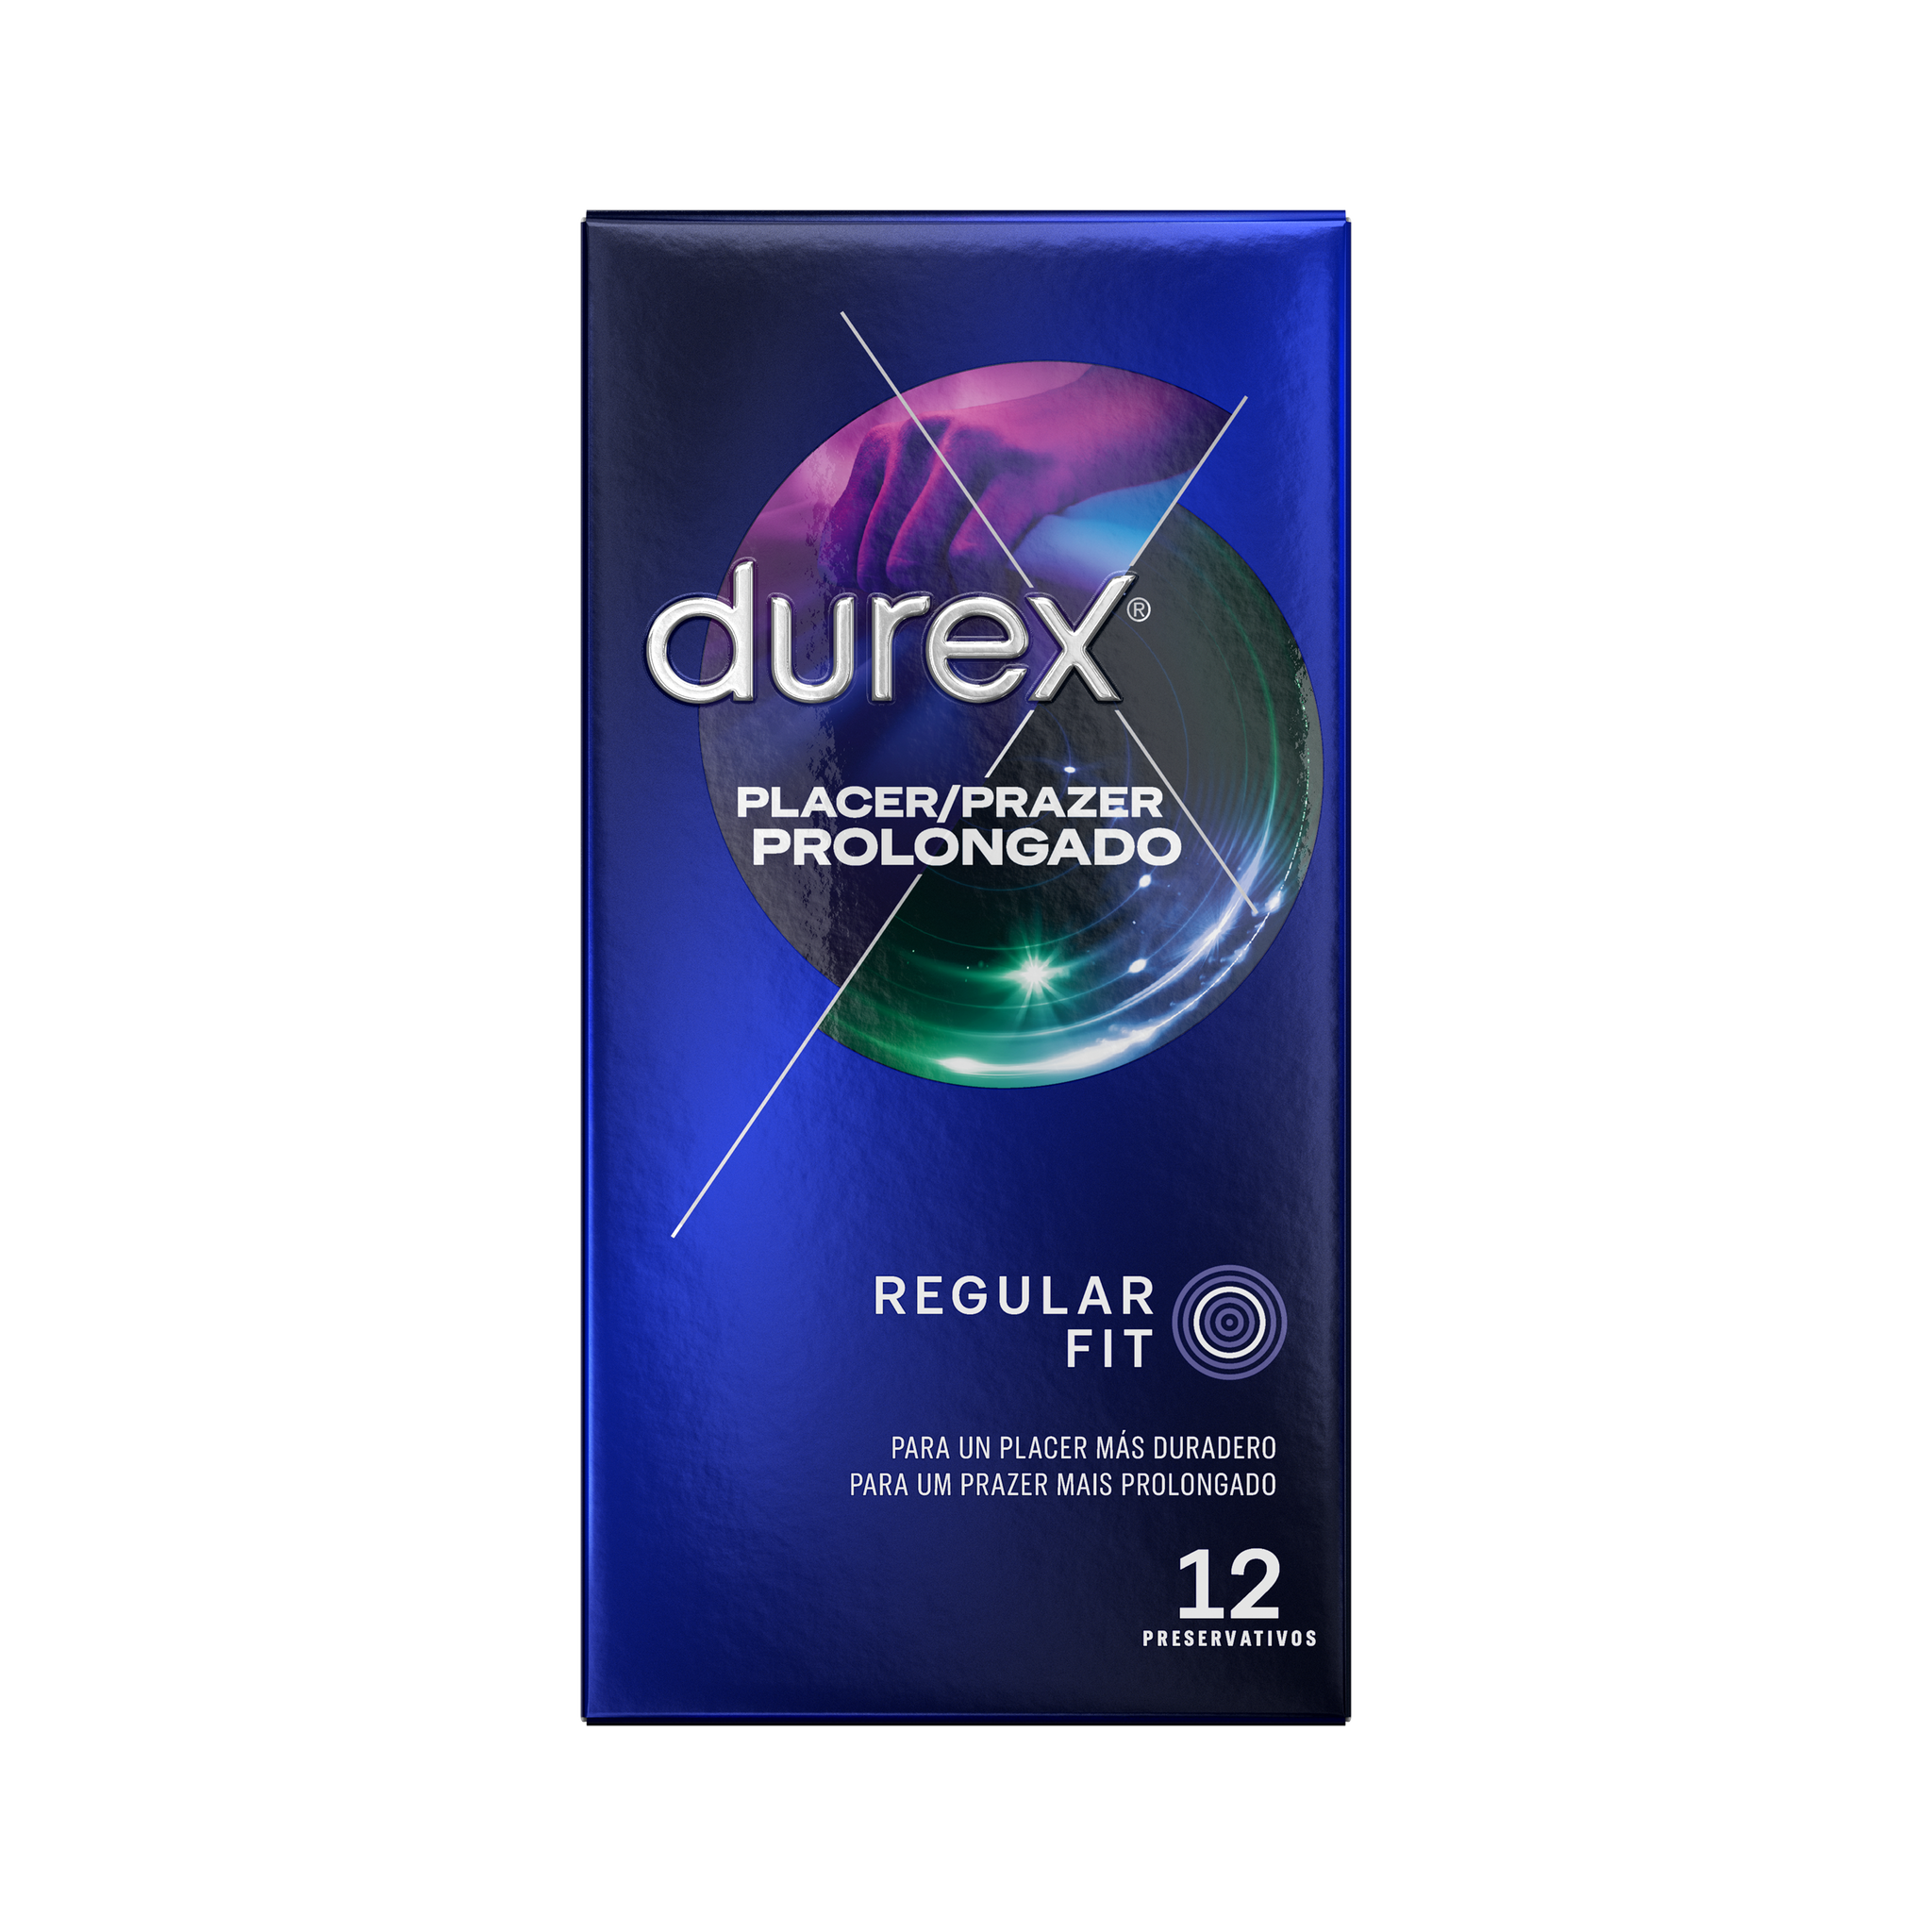 Durex ES Condoms Durex Preservativos Placer Prolongado 12 unidades Condones